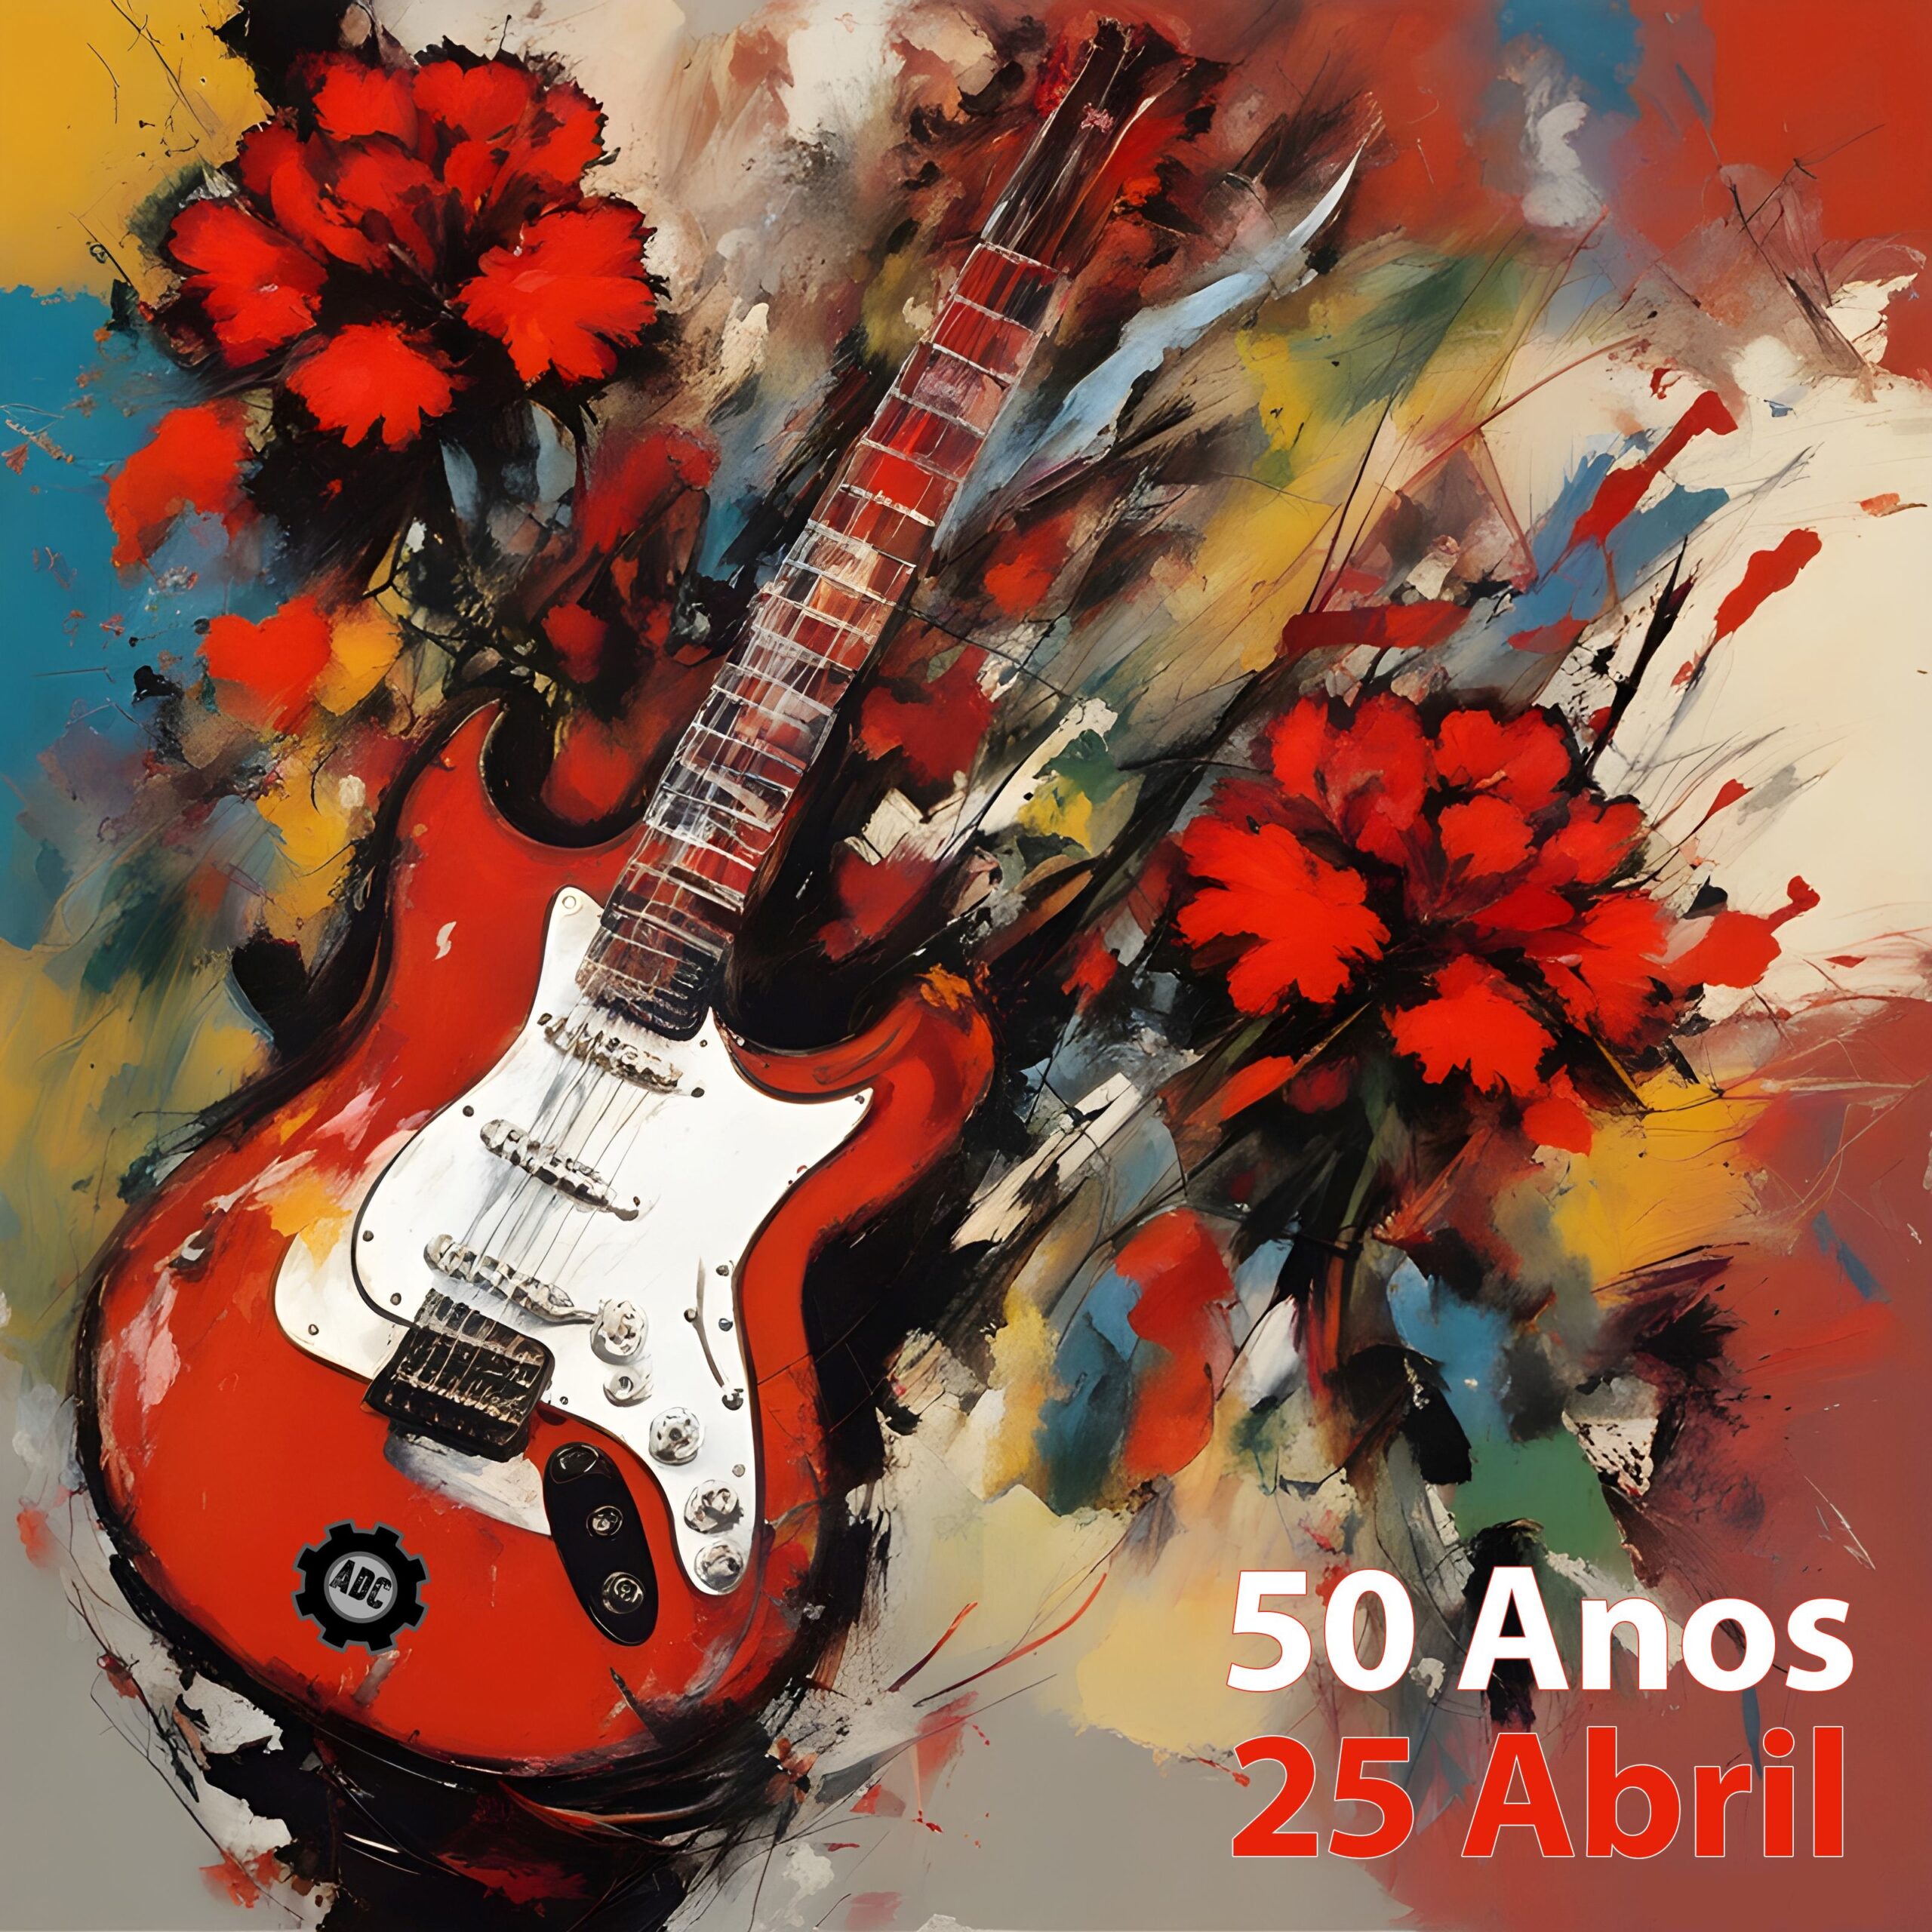 Capa do Evento 50 Anos - 25 Abril